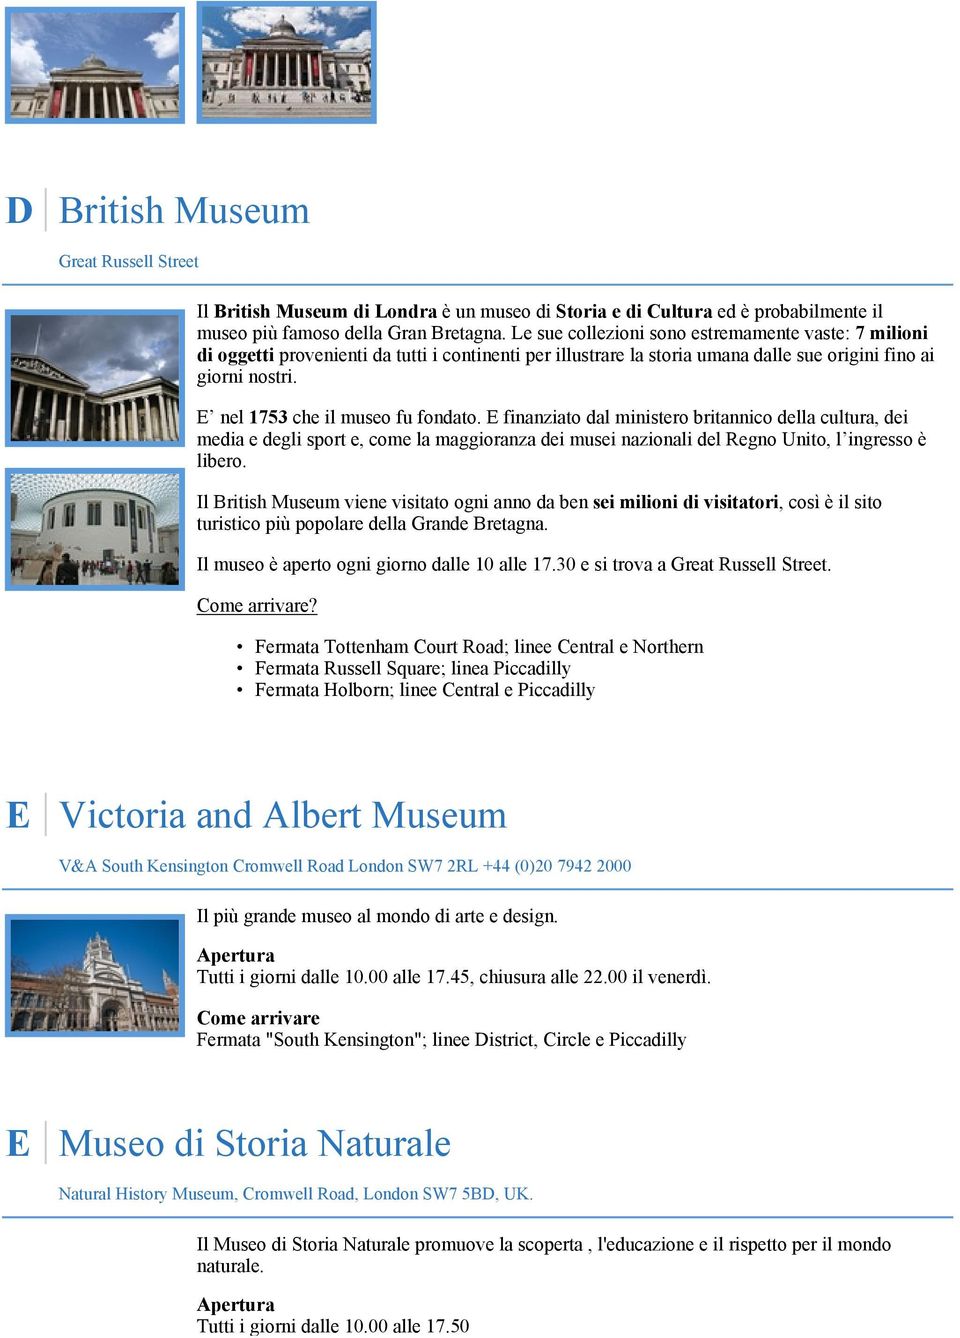 E nel 1753 che il museo fu fondato. E finanziato dal ministero britannico della cultura, dei media e degli sport e, come la maggioranza dei musei nazionali del Regno Unito, l ingresso è libero.